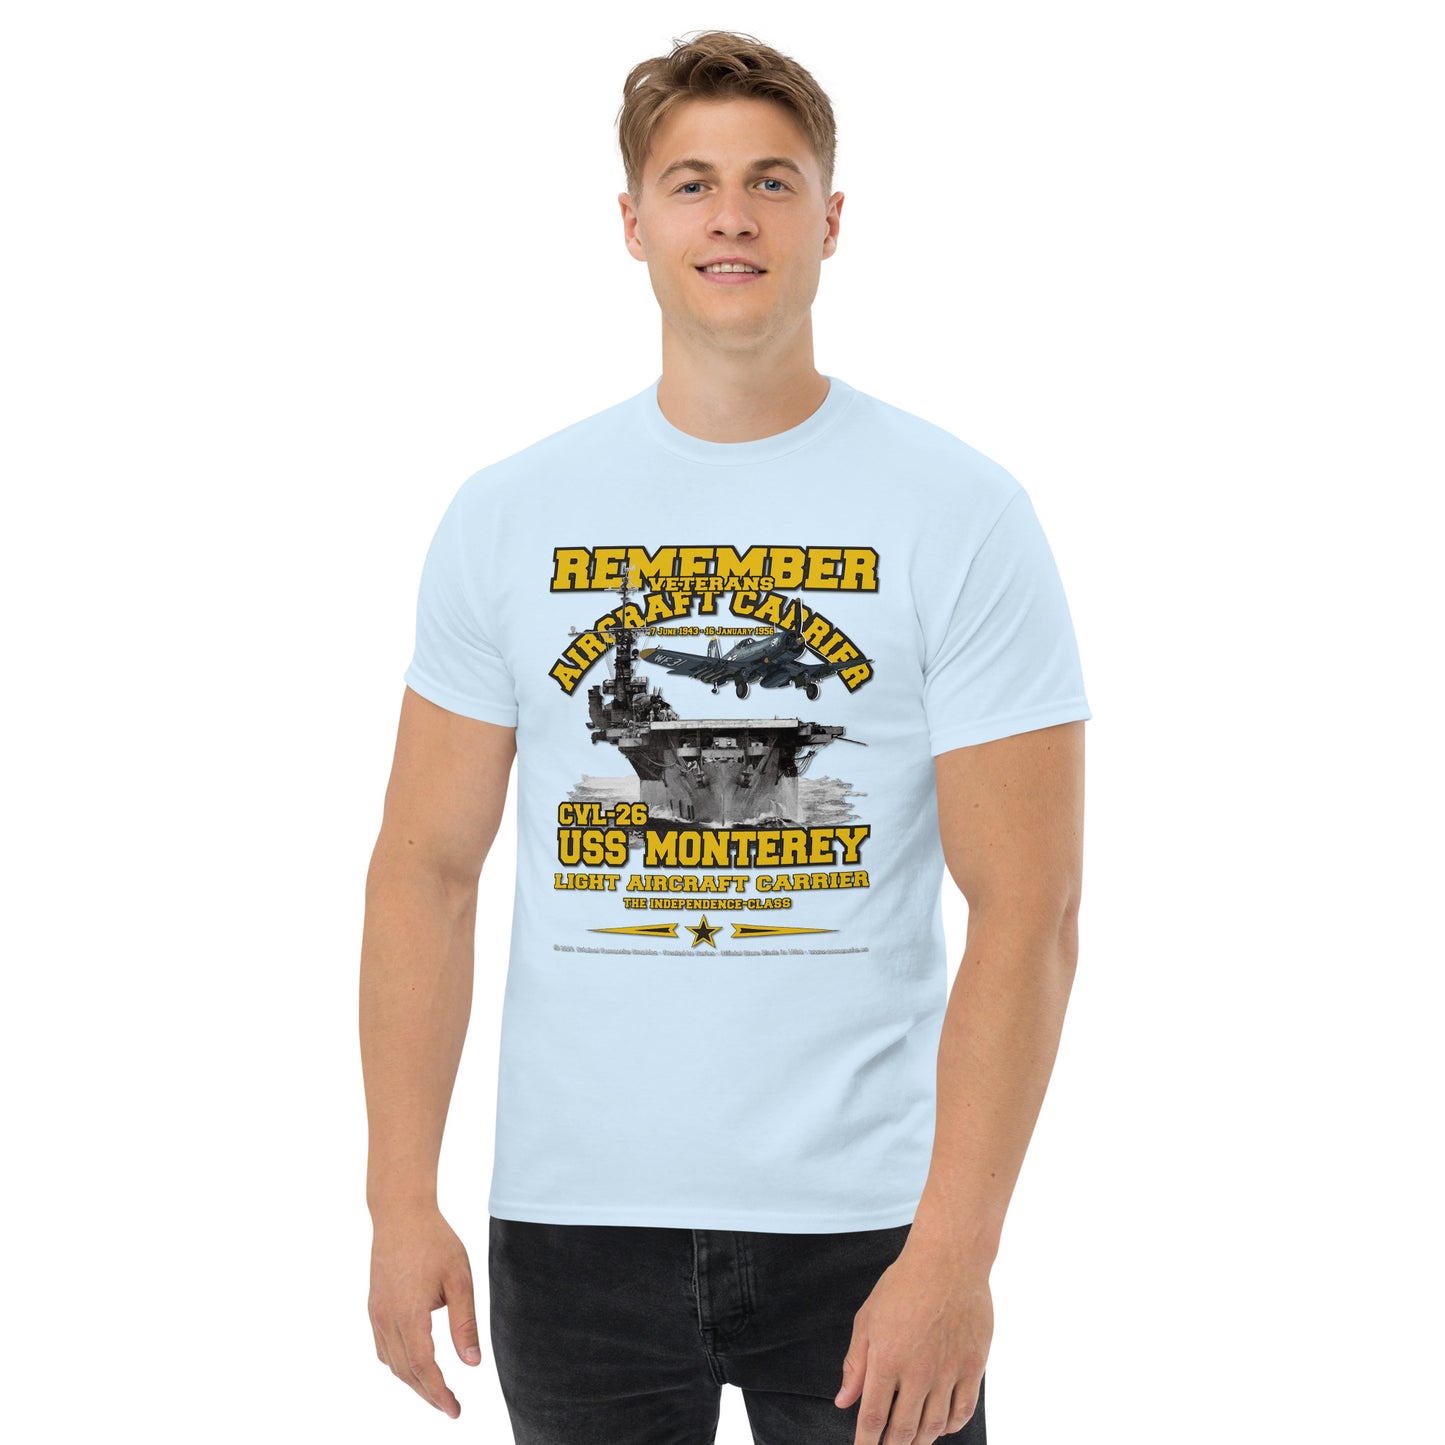 USS MONTEREY CVL-26 Aircraft Carrier Veterans T-Shirt, Comancha Veterans T-shirt,